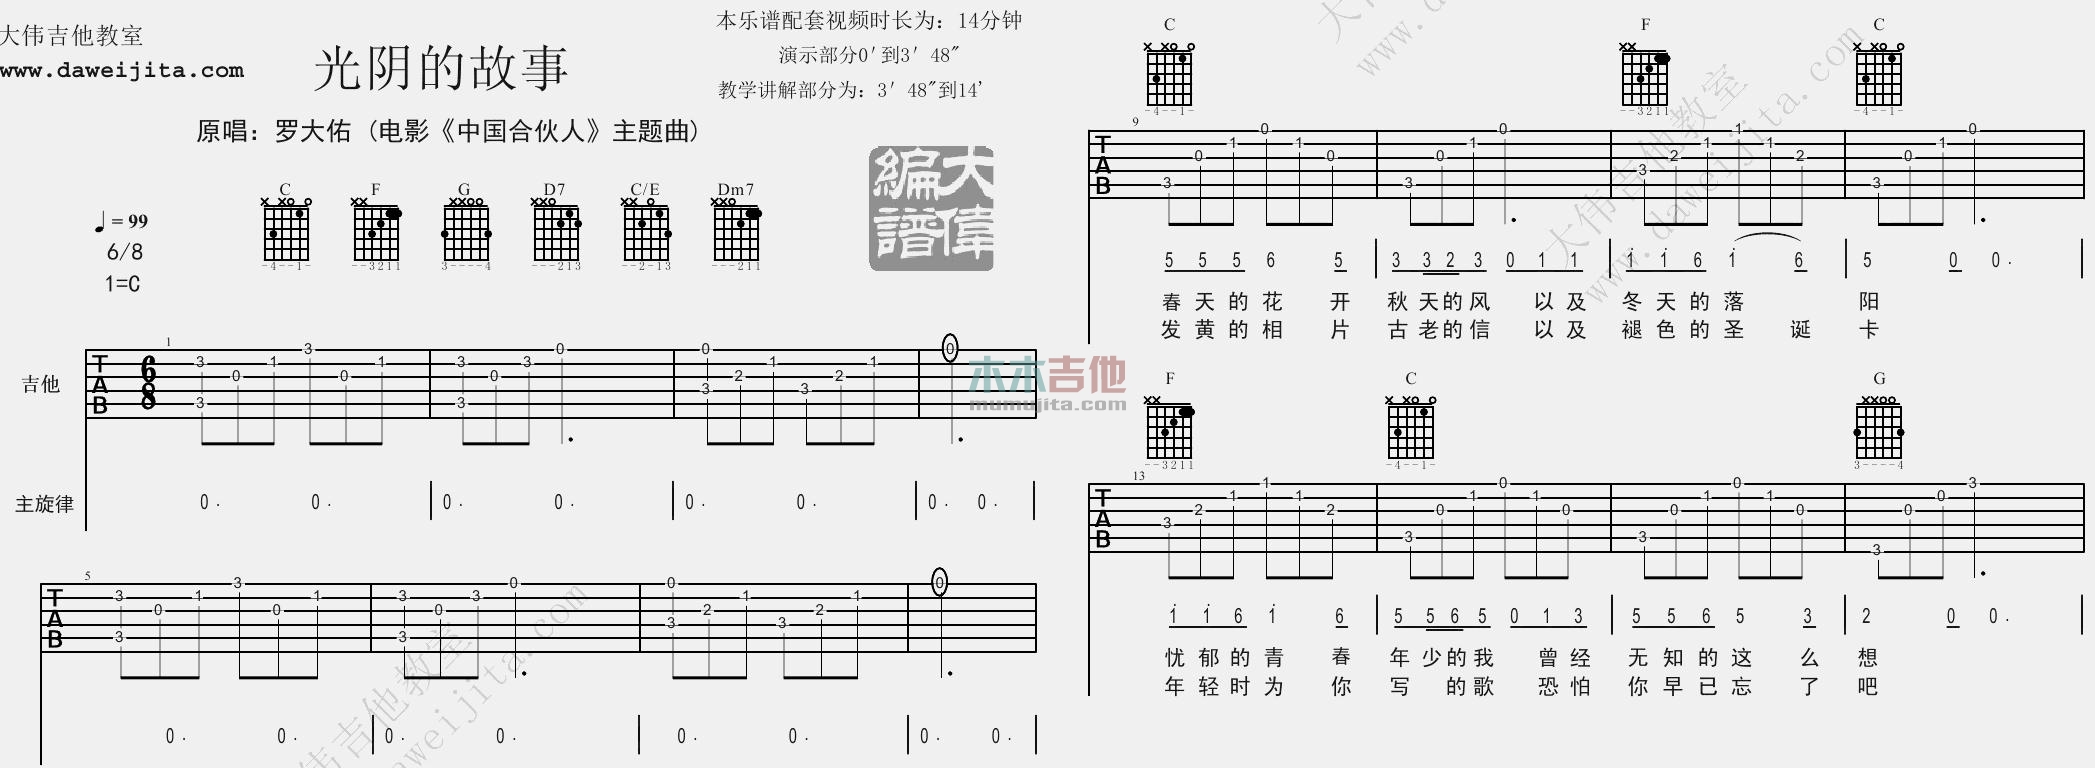 罗大佑《光阴的故事》吉他谱(C调)-Guitar Music Score